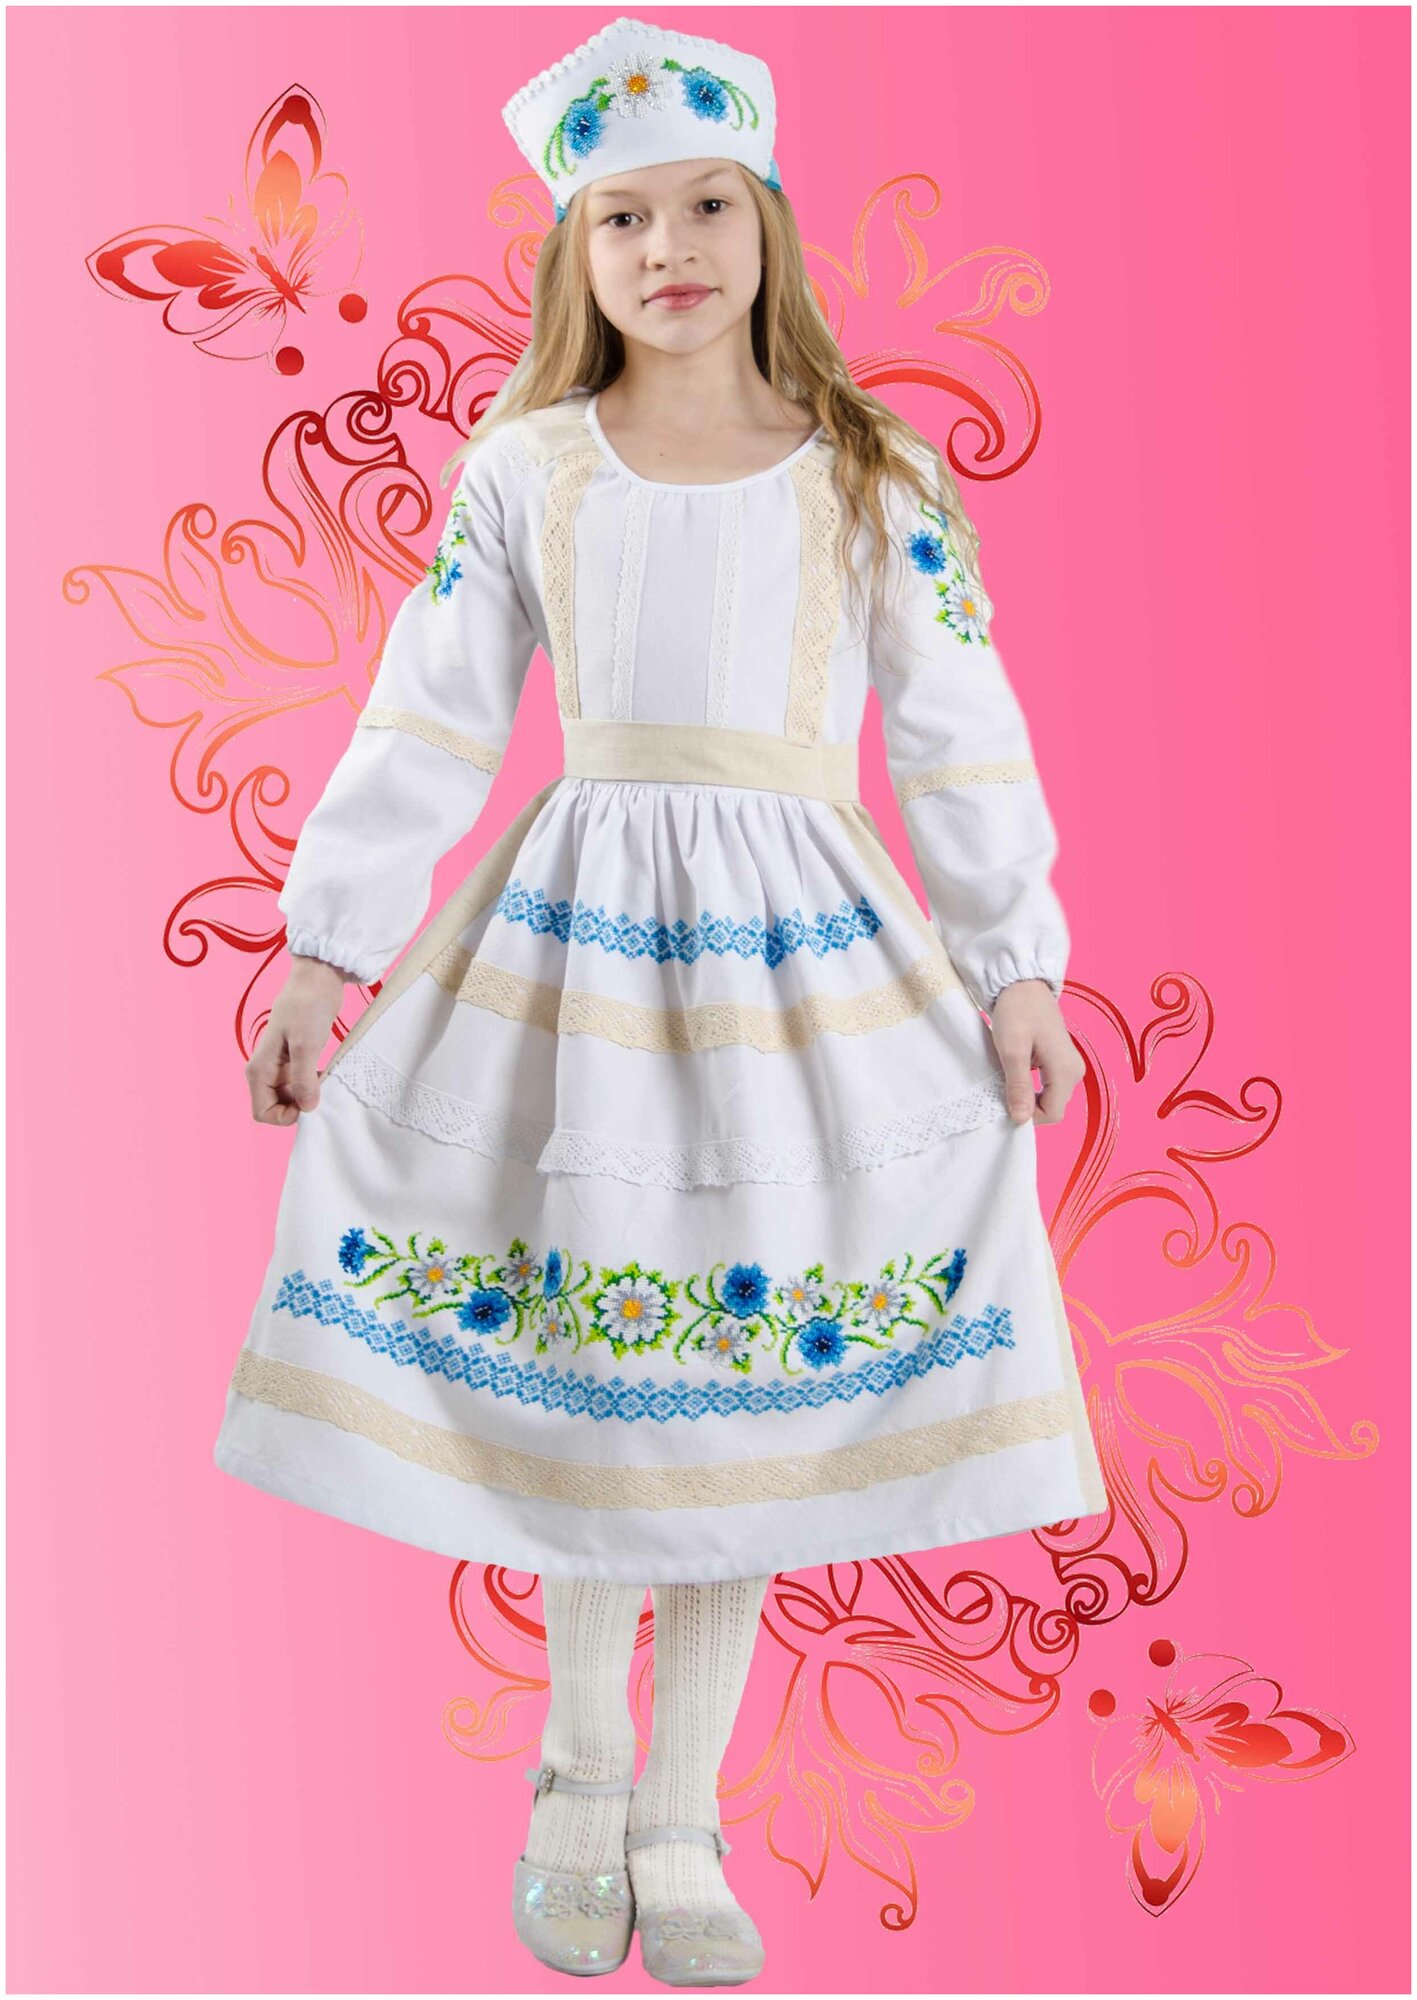 КДПН-02 "Ромашковый цвет" 134-146 р-р набор для вышивки детского платья Каролинка - фото №1